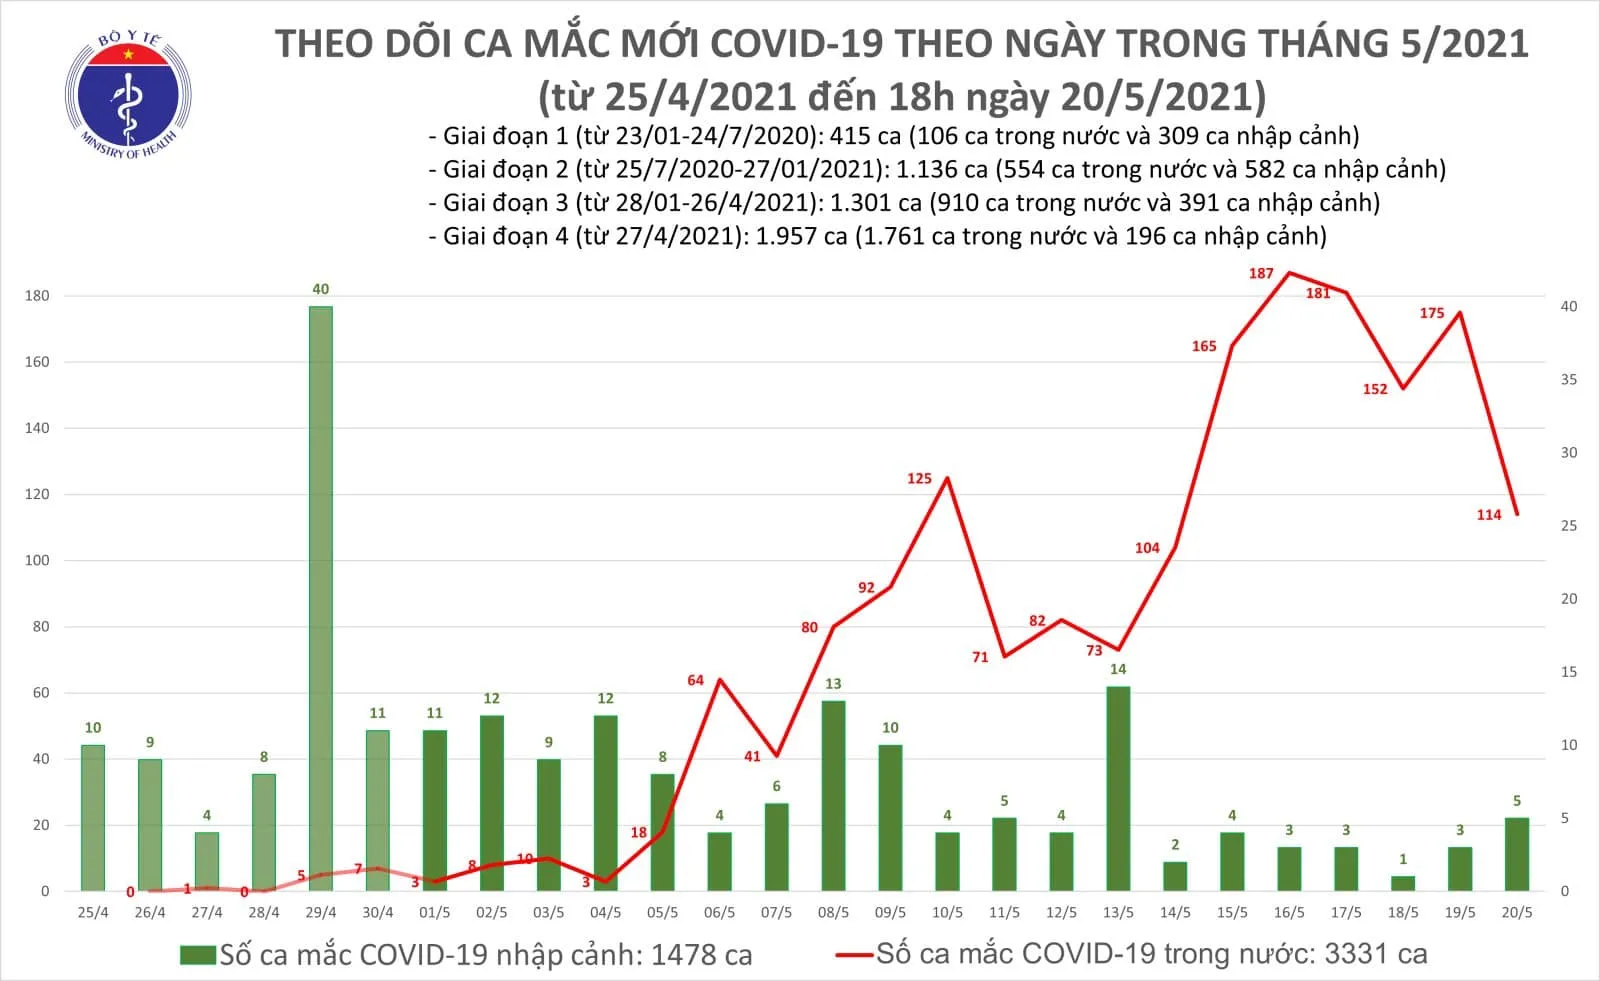 Tối 20/5, thêm 40 ca mắc COVID-19 trong nước, riêng TPHCM có 3 ca